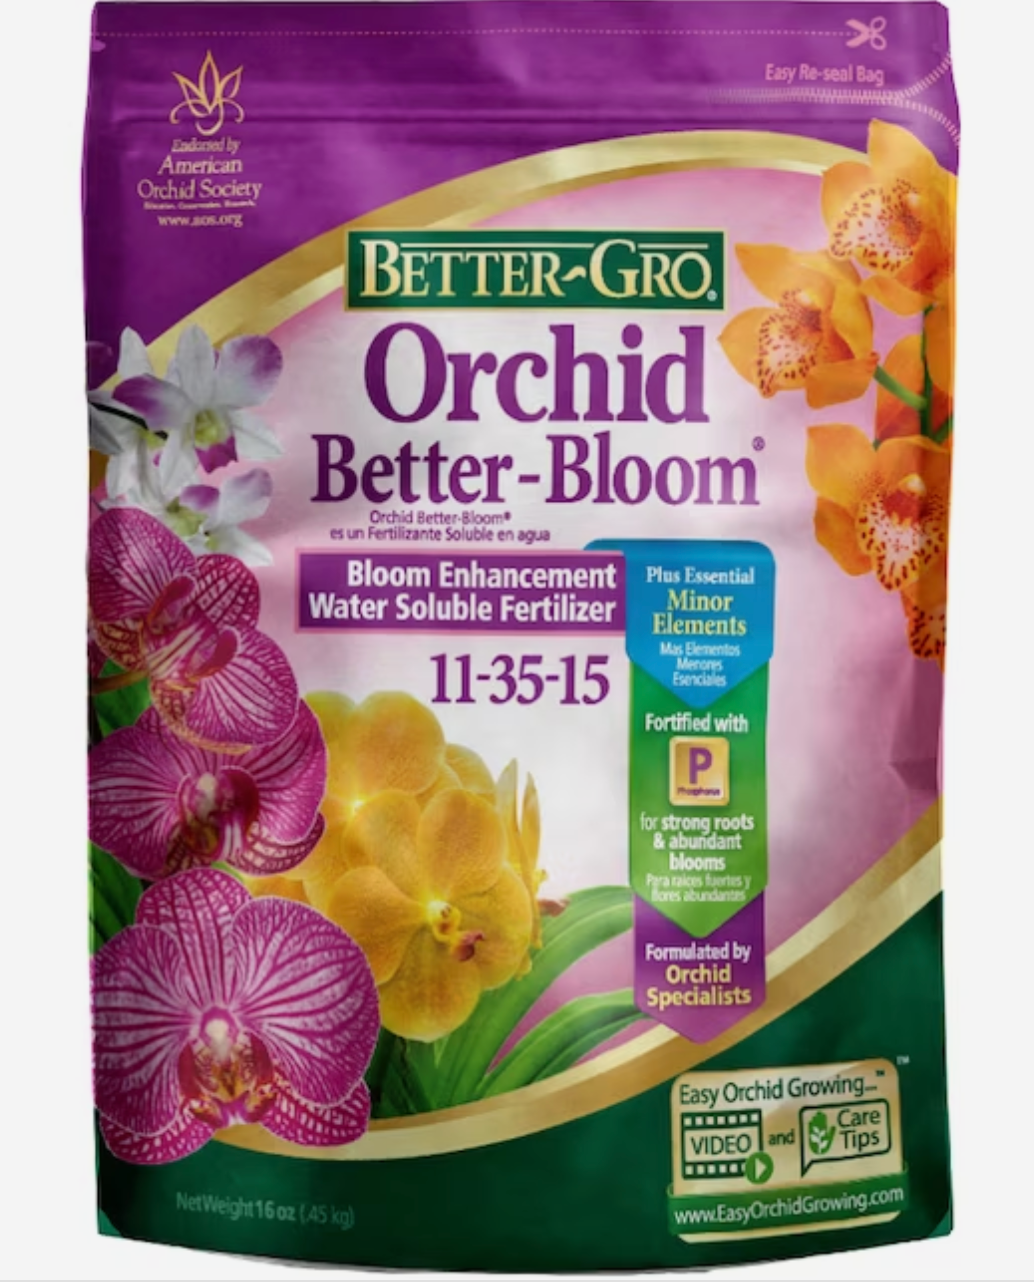 Better Gro Orchid Better-Bloom Fertilizer (11-35-15)